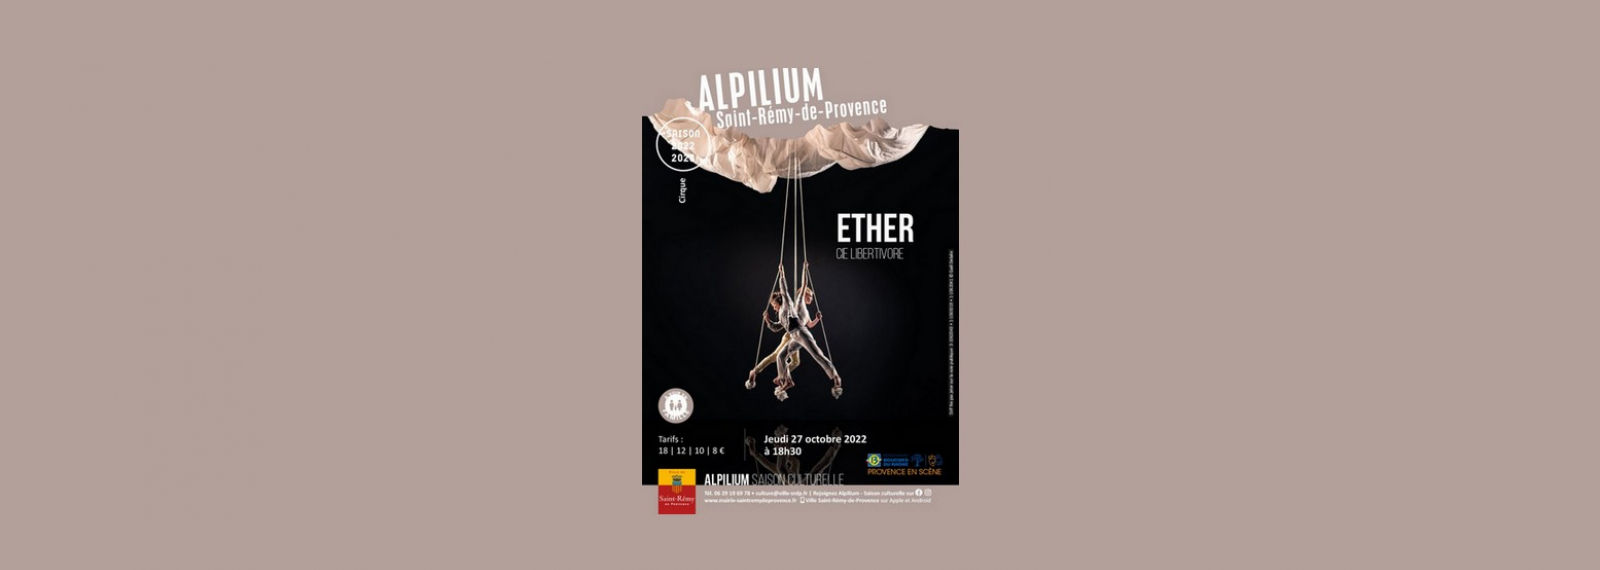 Spectacle aérien / cirque Ether à l'Alpilium